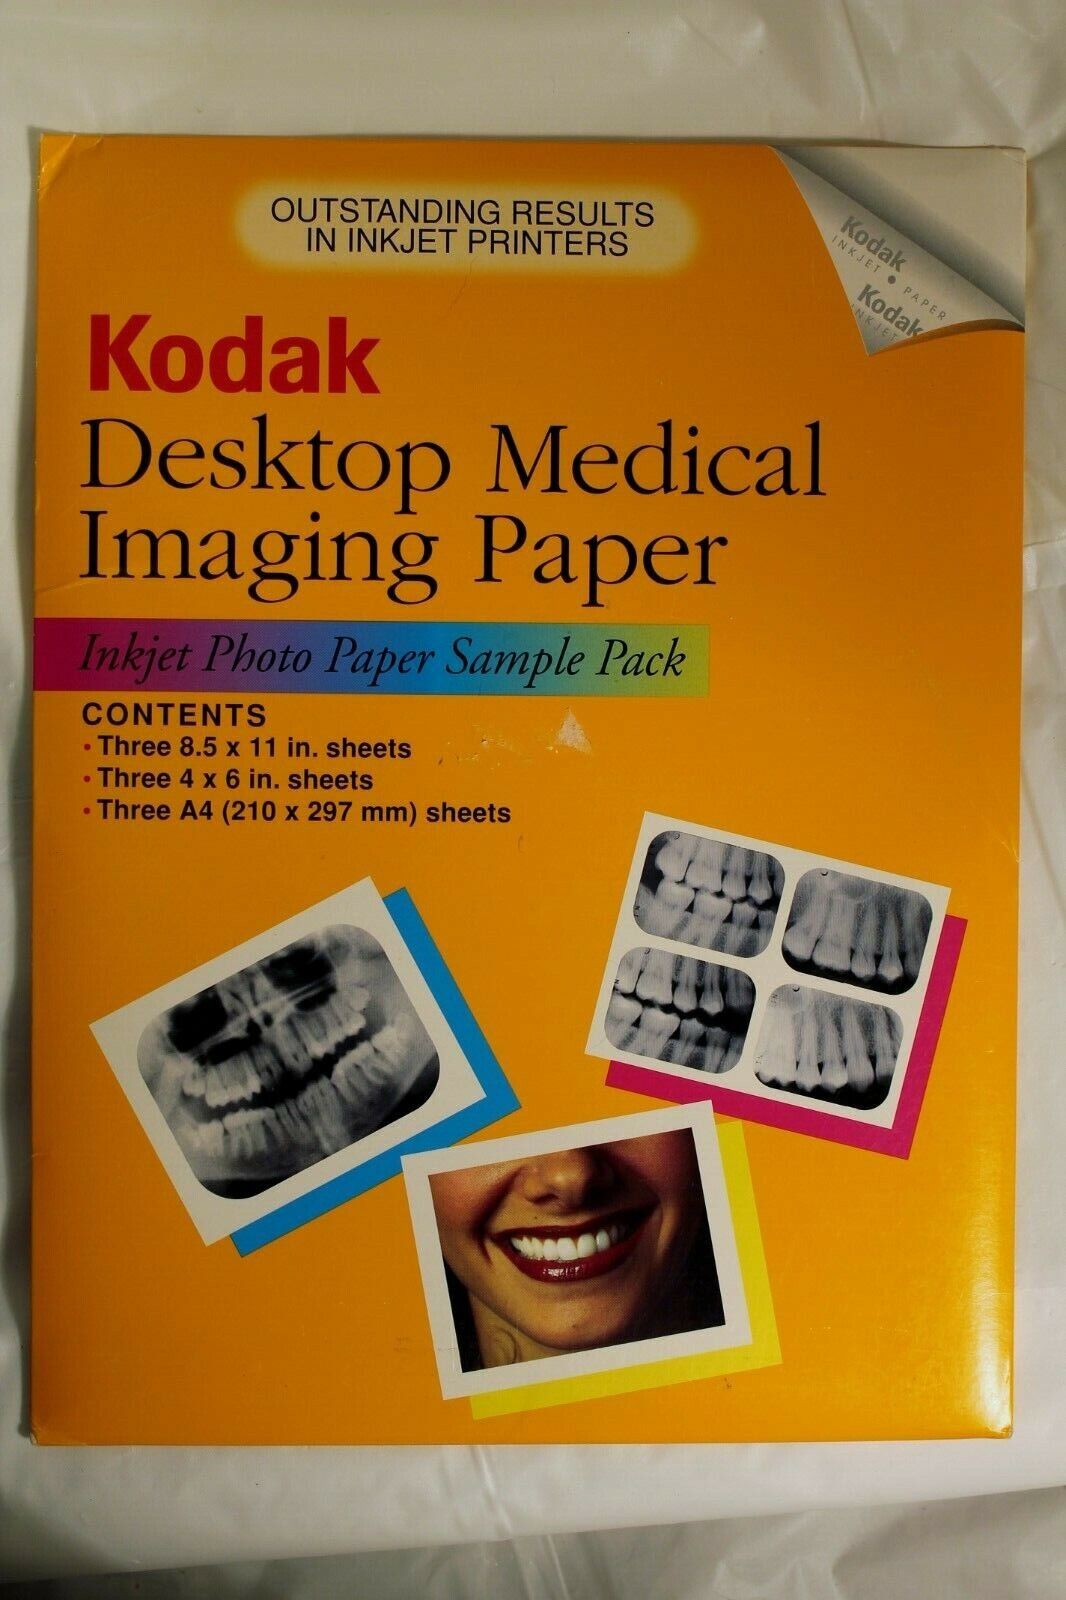 Kodak Dental & Medical Imaging Inkjet Paper Premium photo NEW Sampler Pack